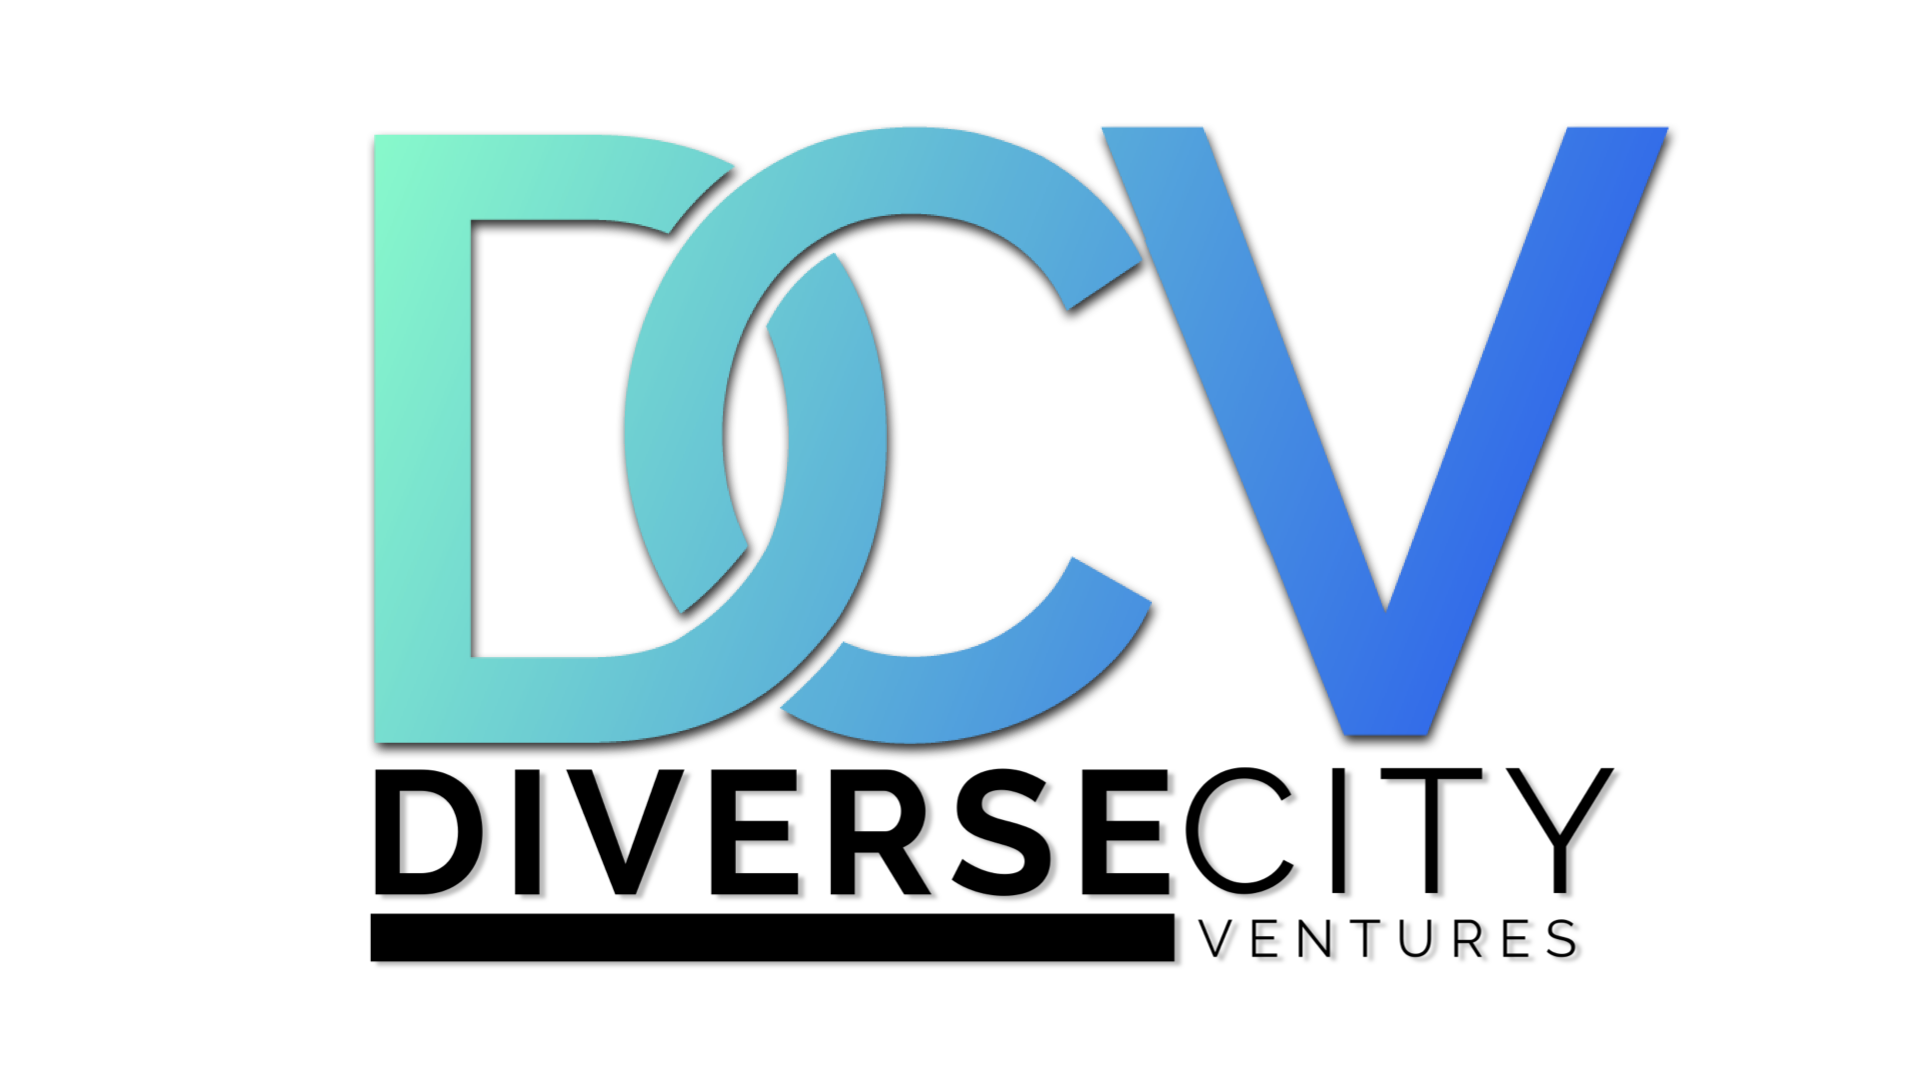 DiverseCity Ventures LLC